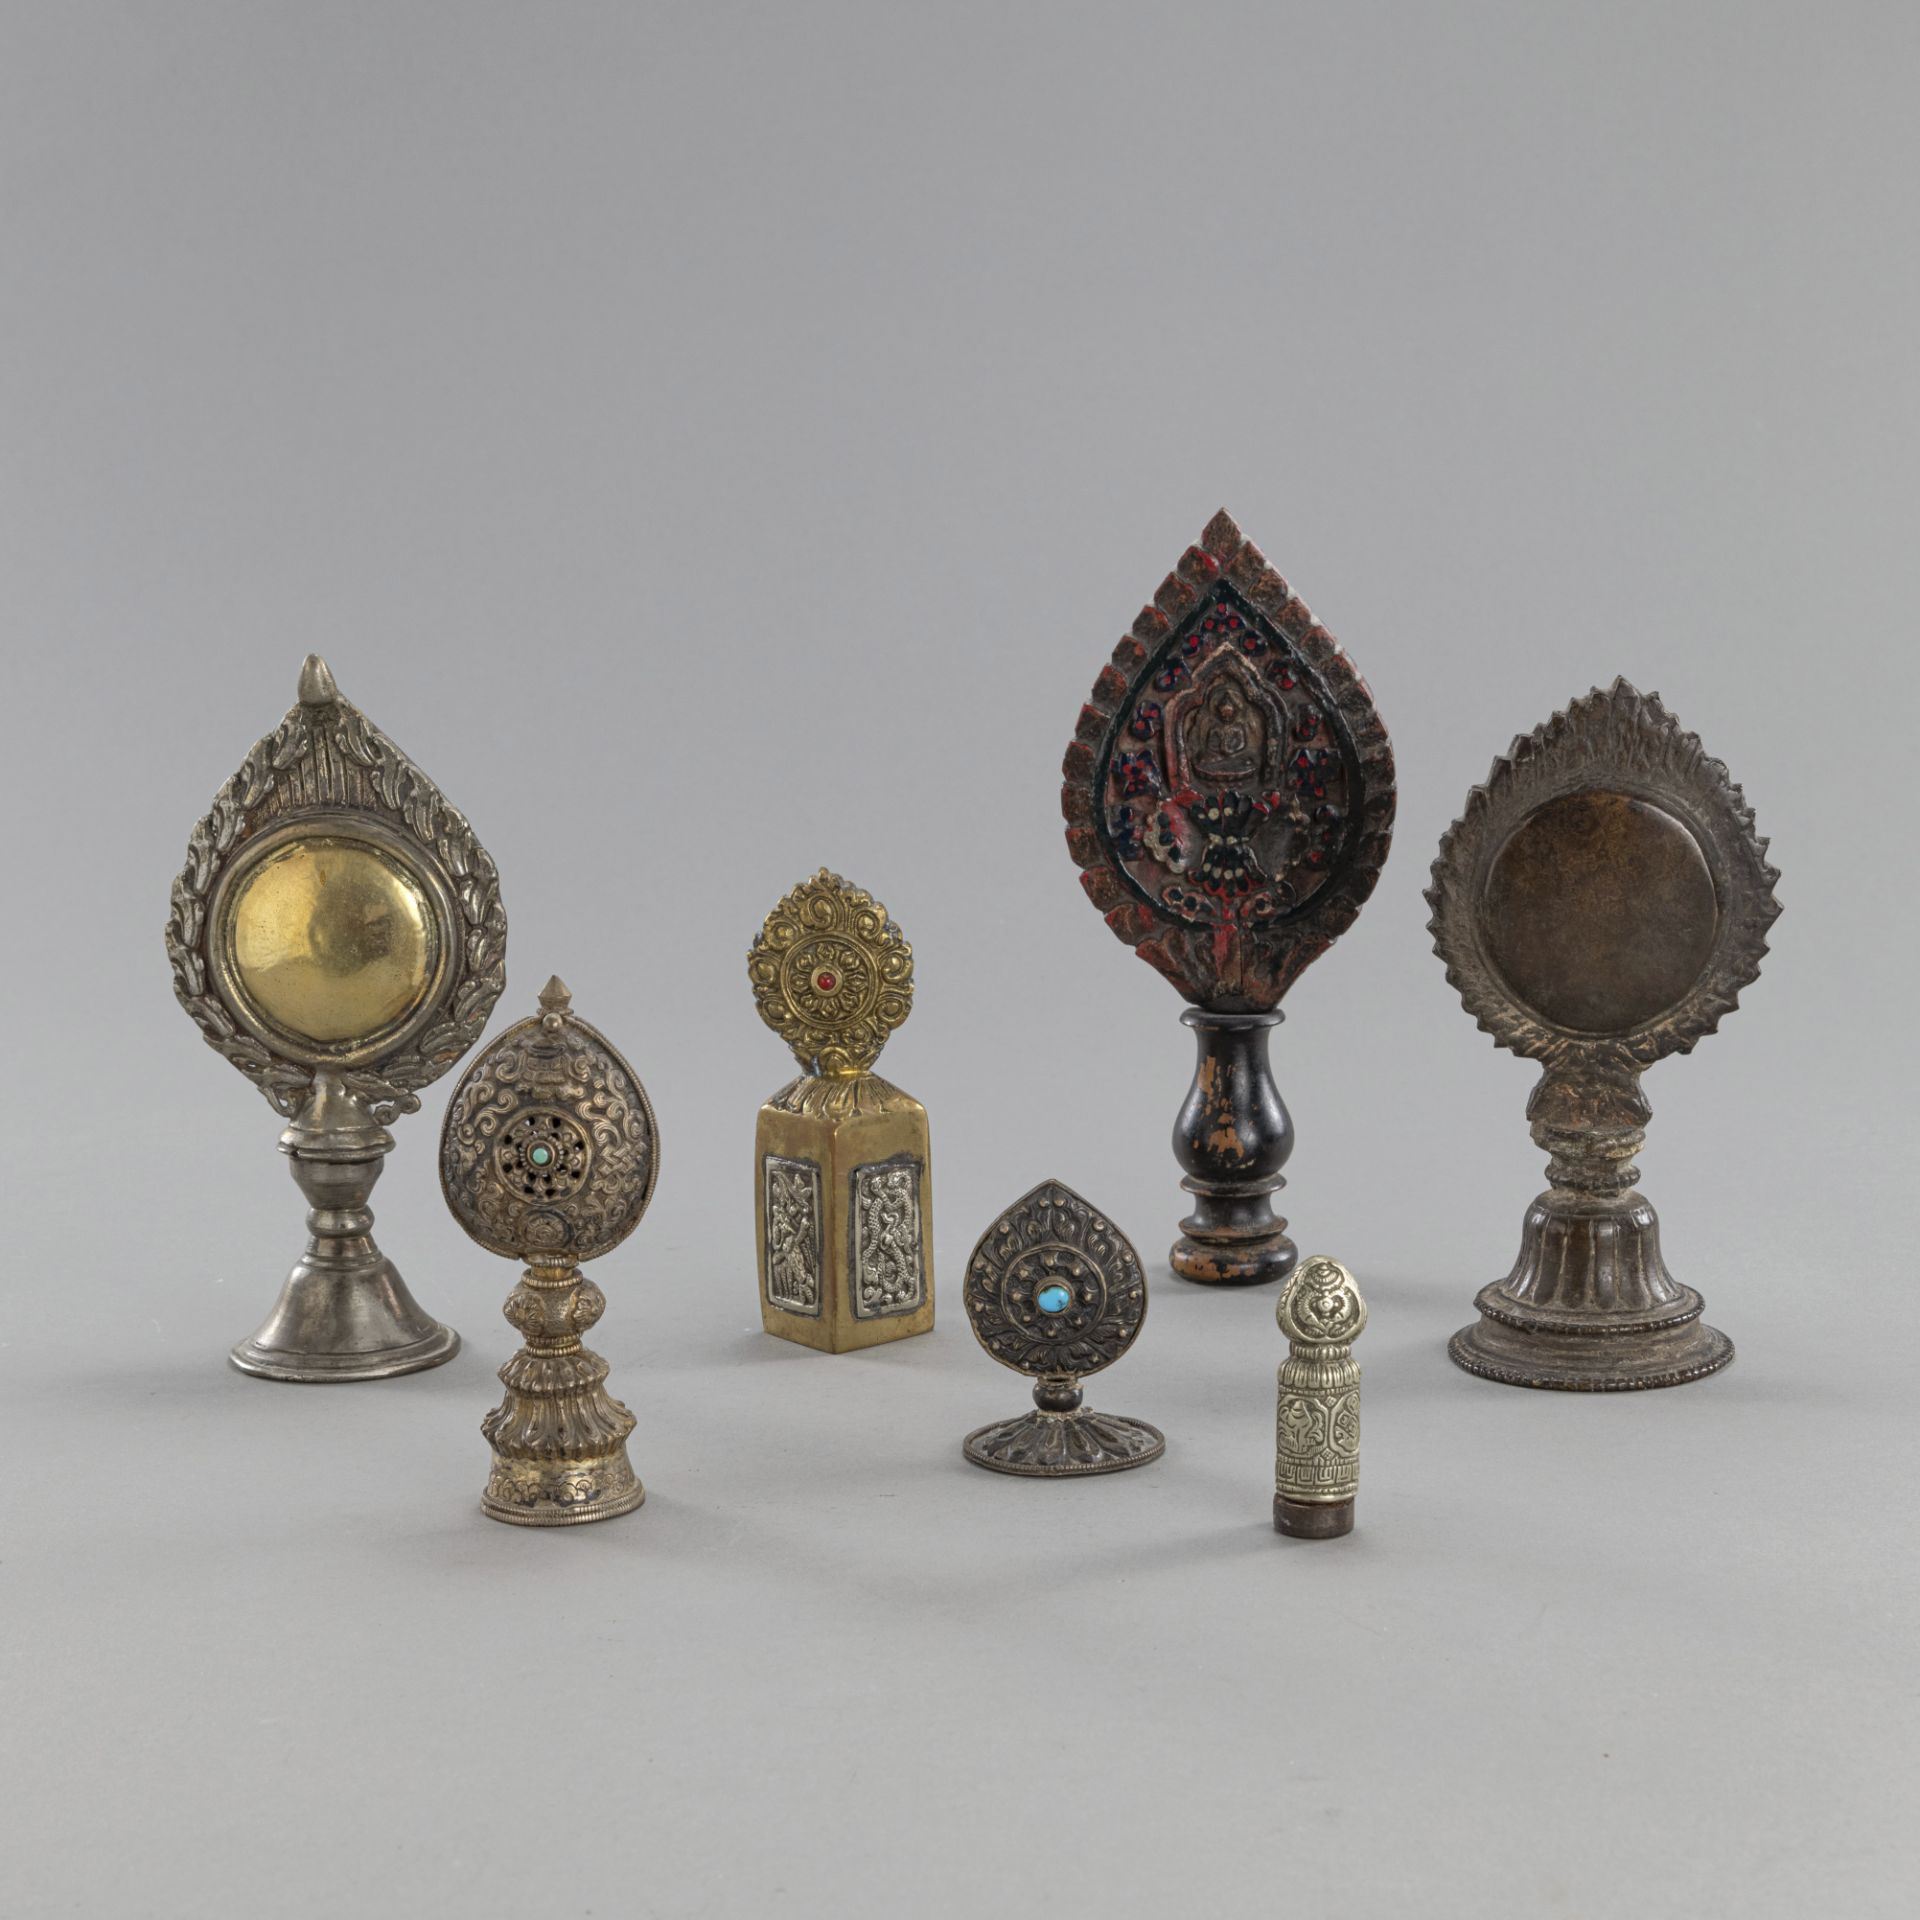 Gruppe von fünf Altaremblemen, einem Siegel und einem Petschaft aus Metall bzw. Holz